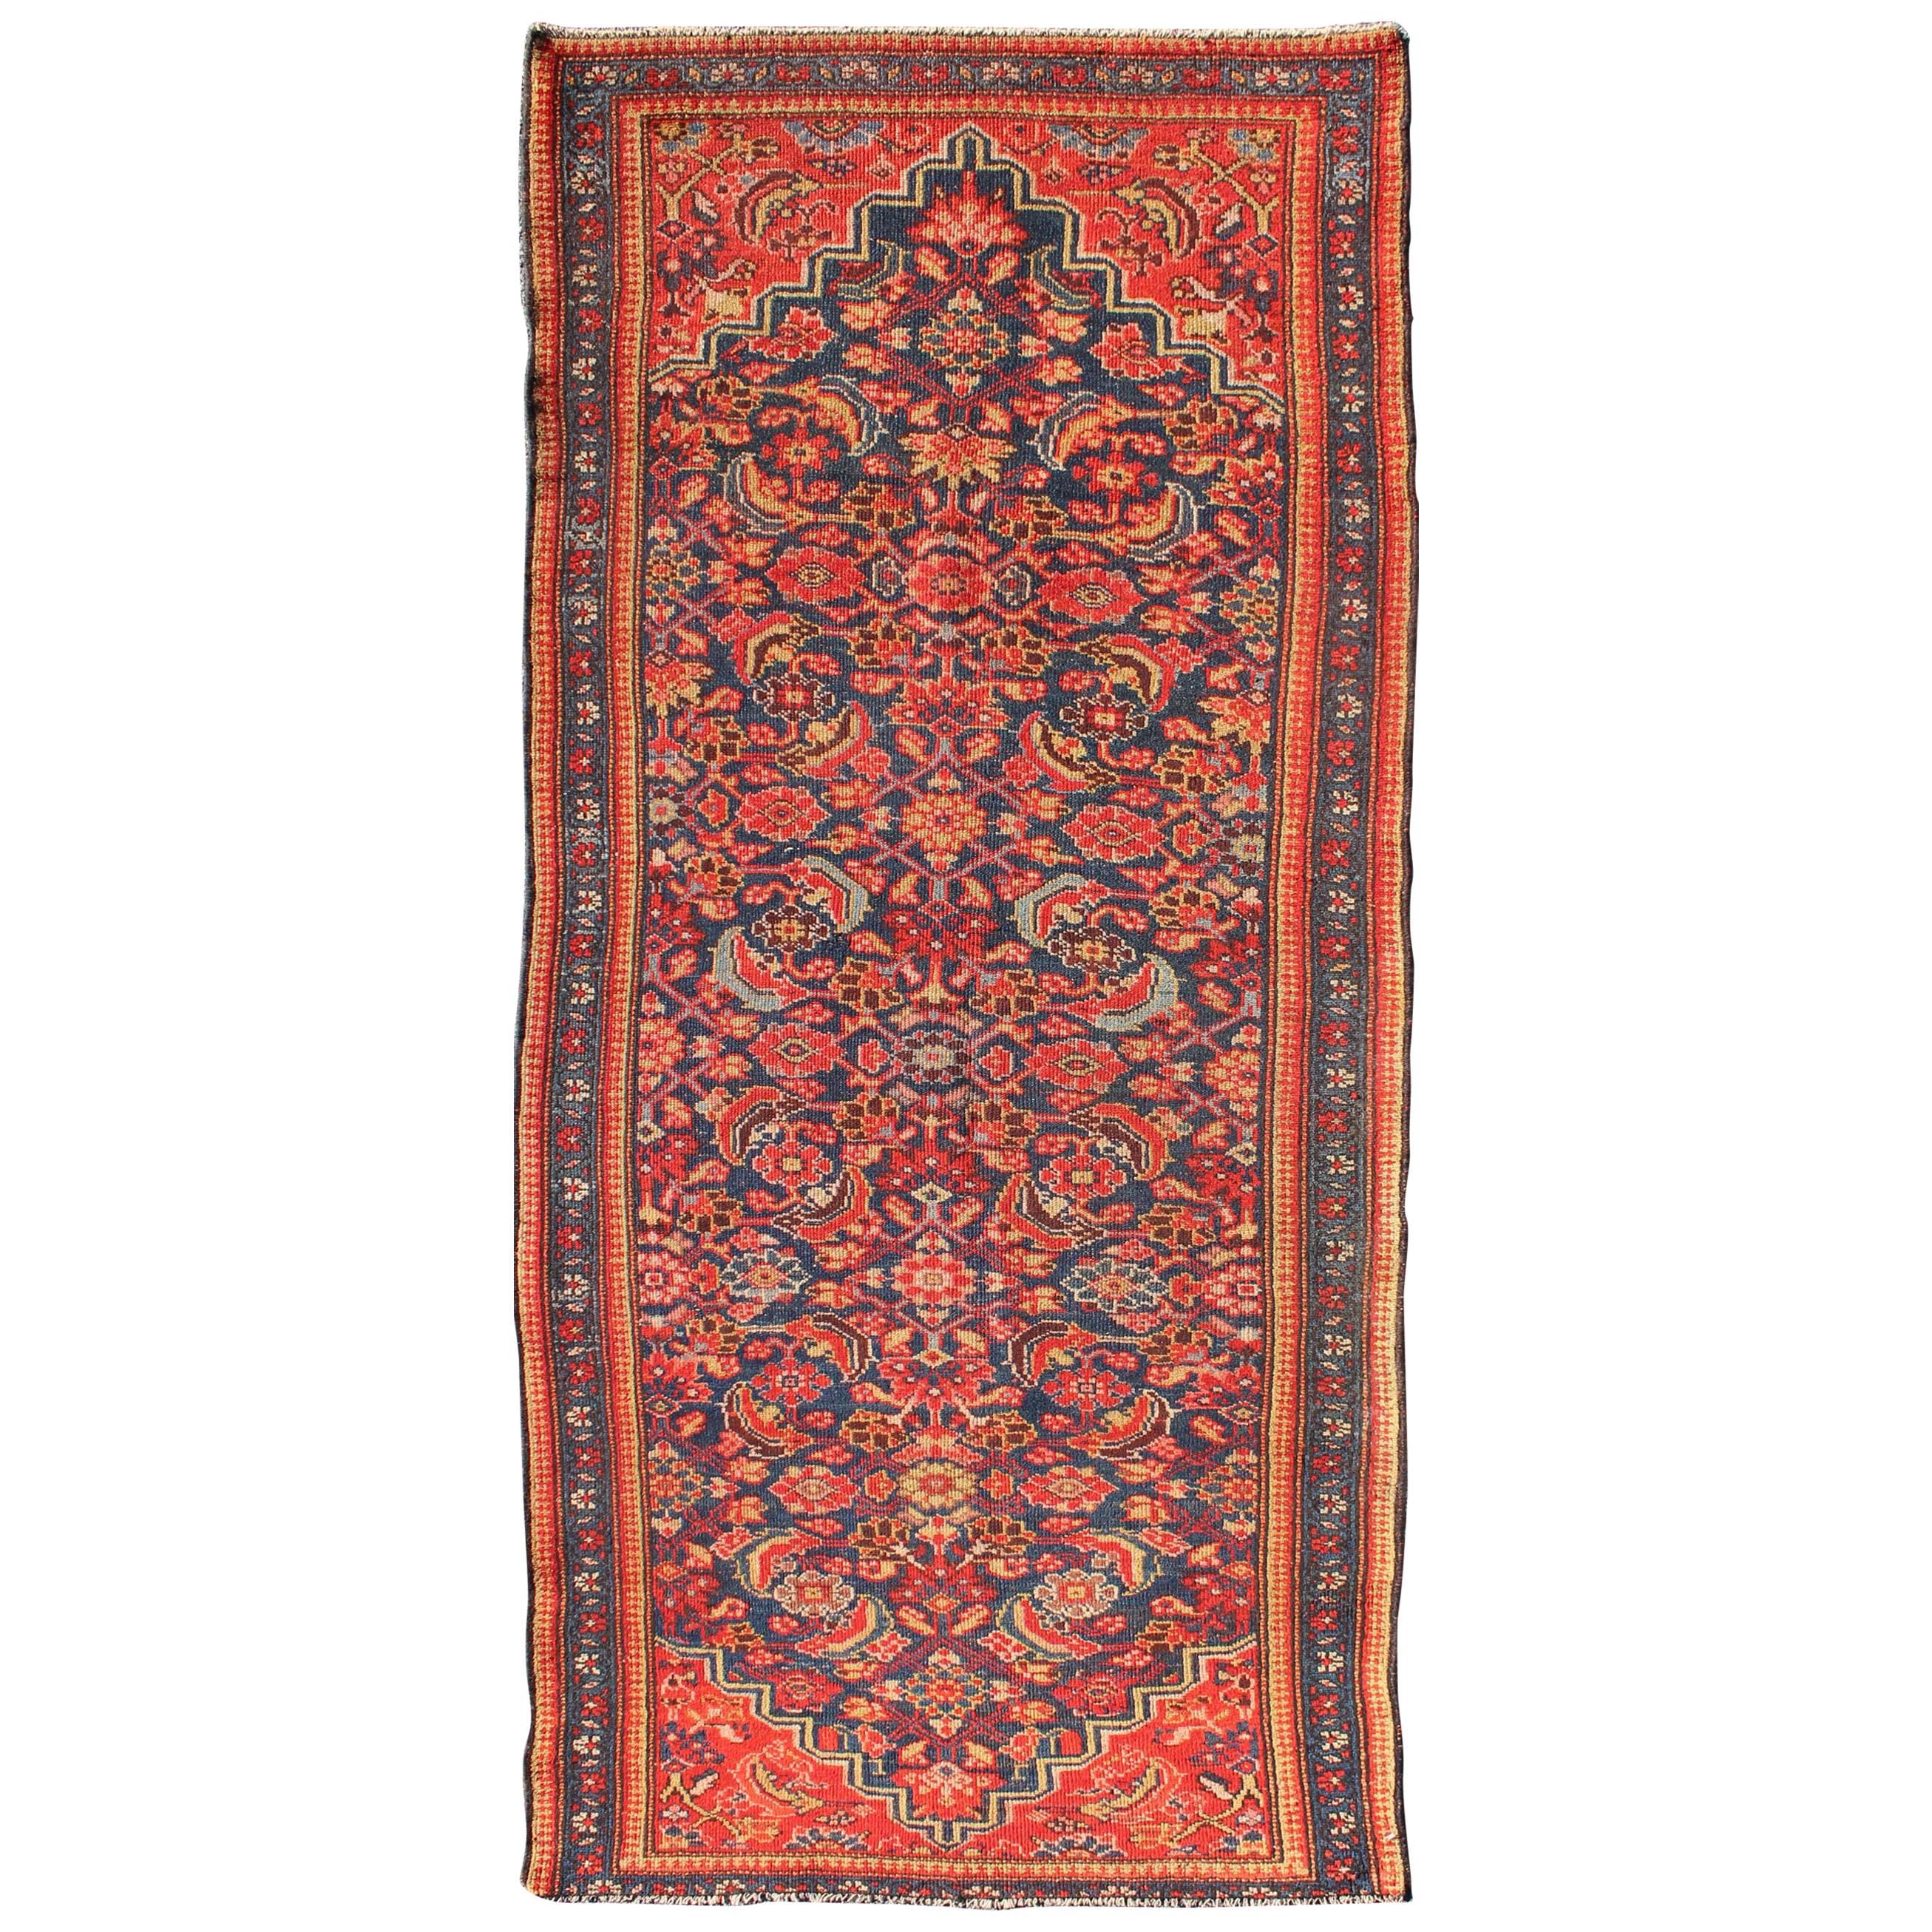 Roter und blauer antiker persischer Malayer-Teppich mit floralem Allover-Muster